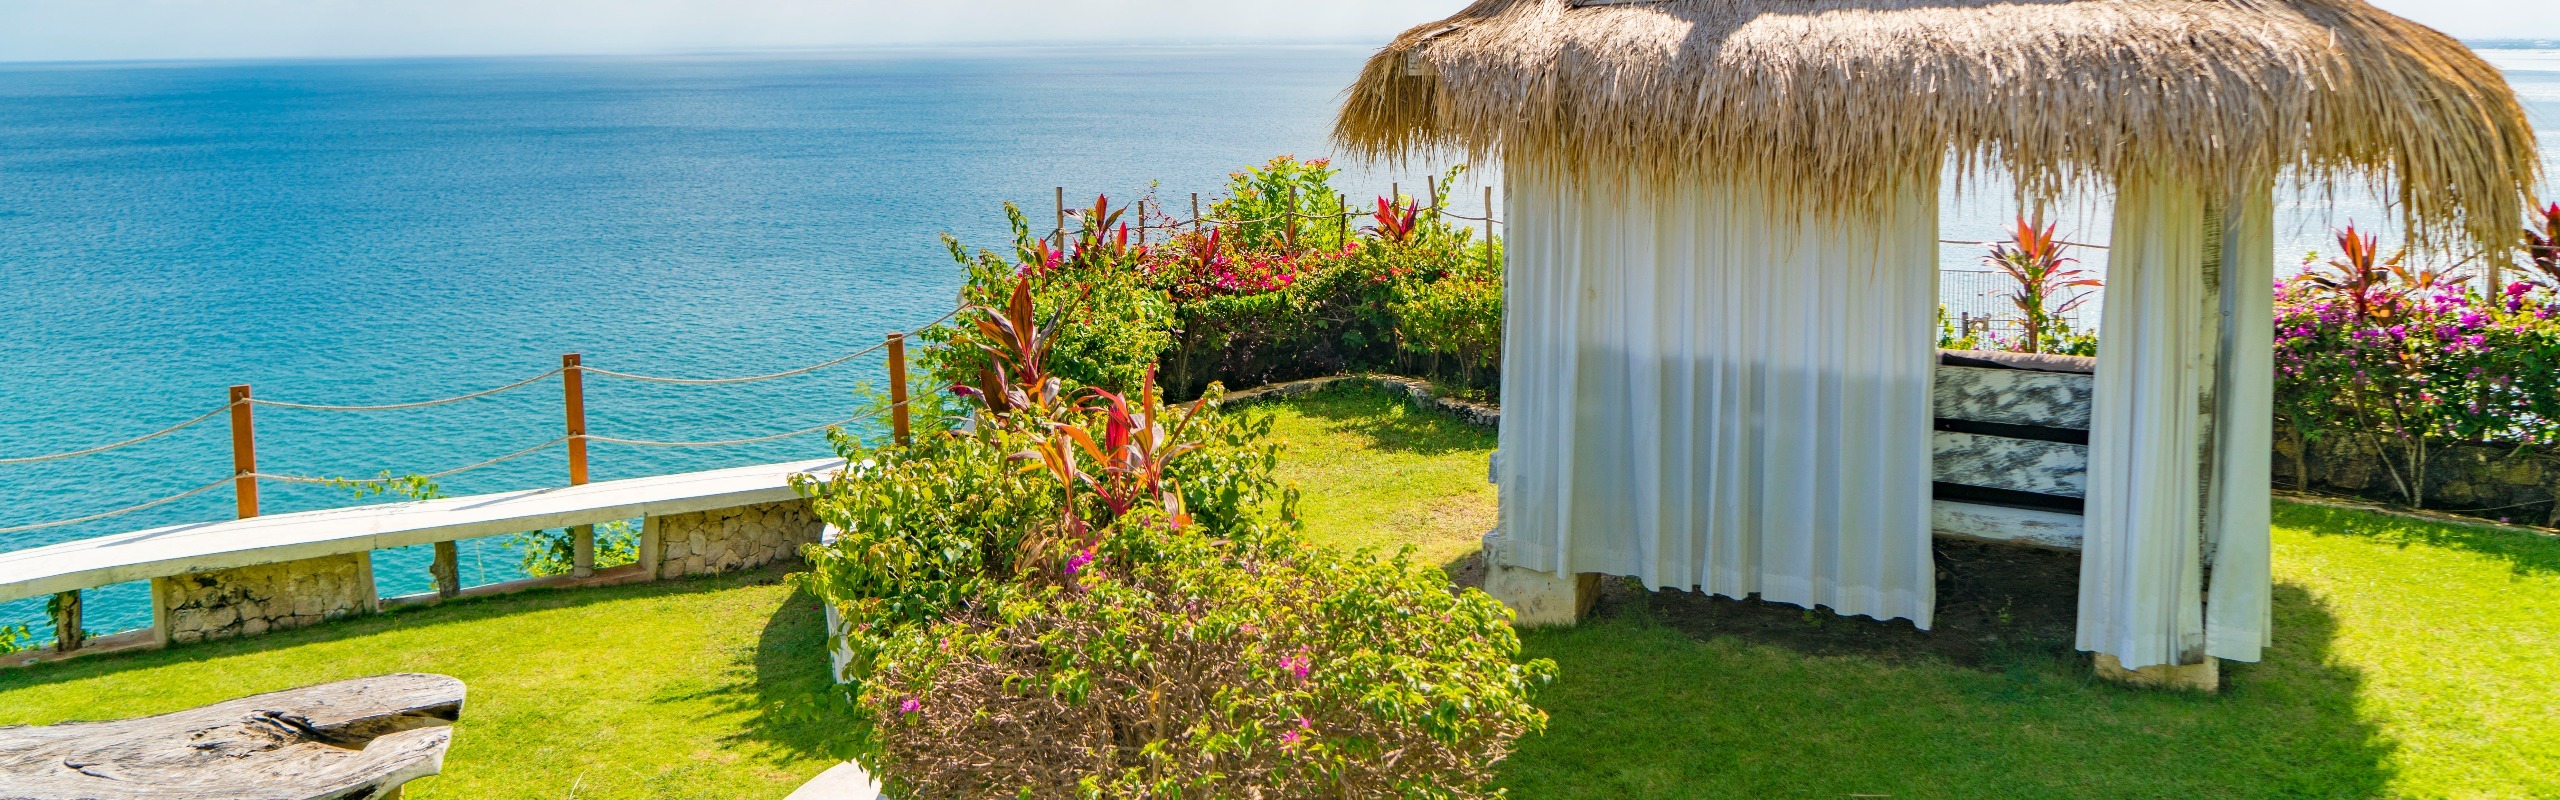 The 10 Best Honeymoon Hotels in Bali